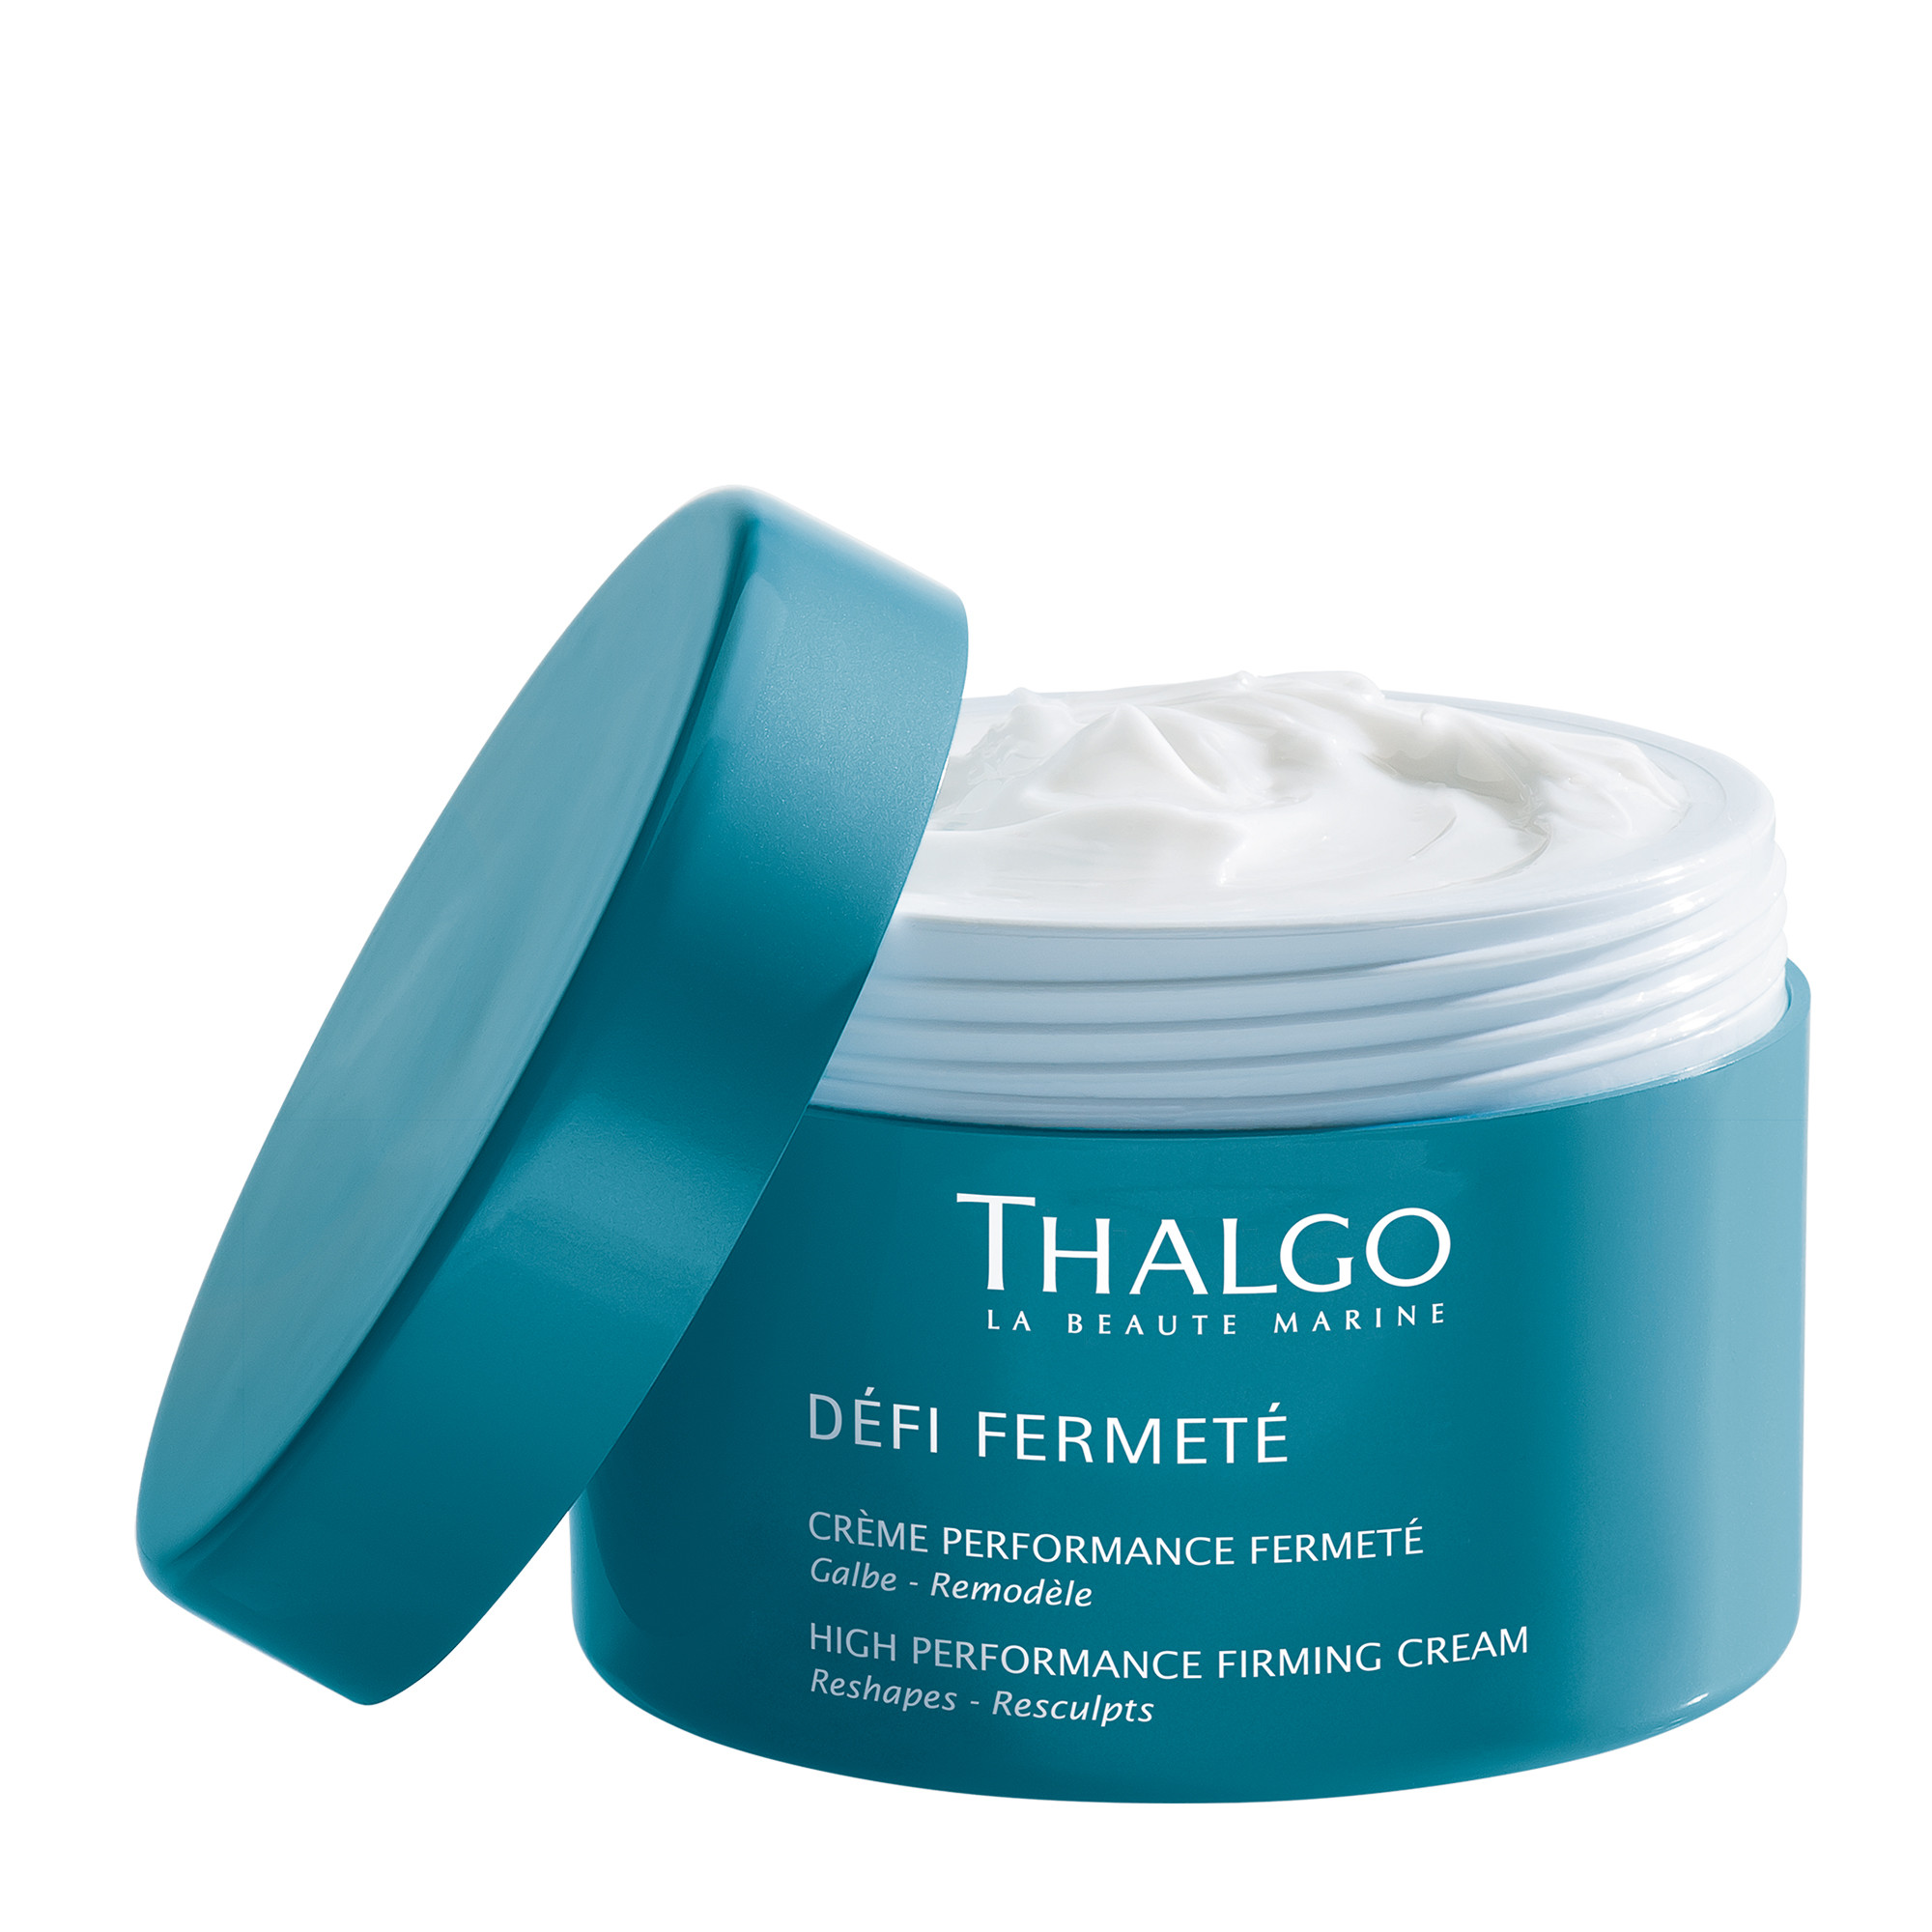 Thalgo Defi Fermete High Performance Firming Cream Інтенсивний зміцнюючий крем для тіла